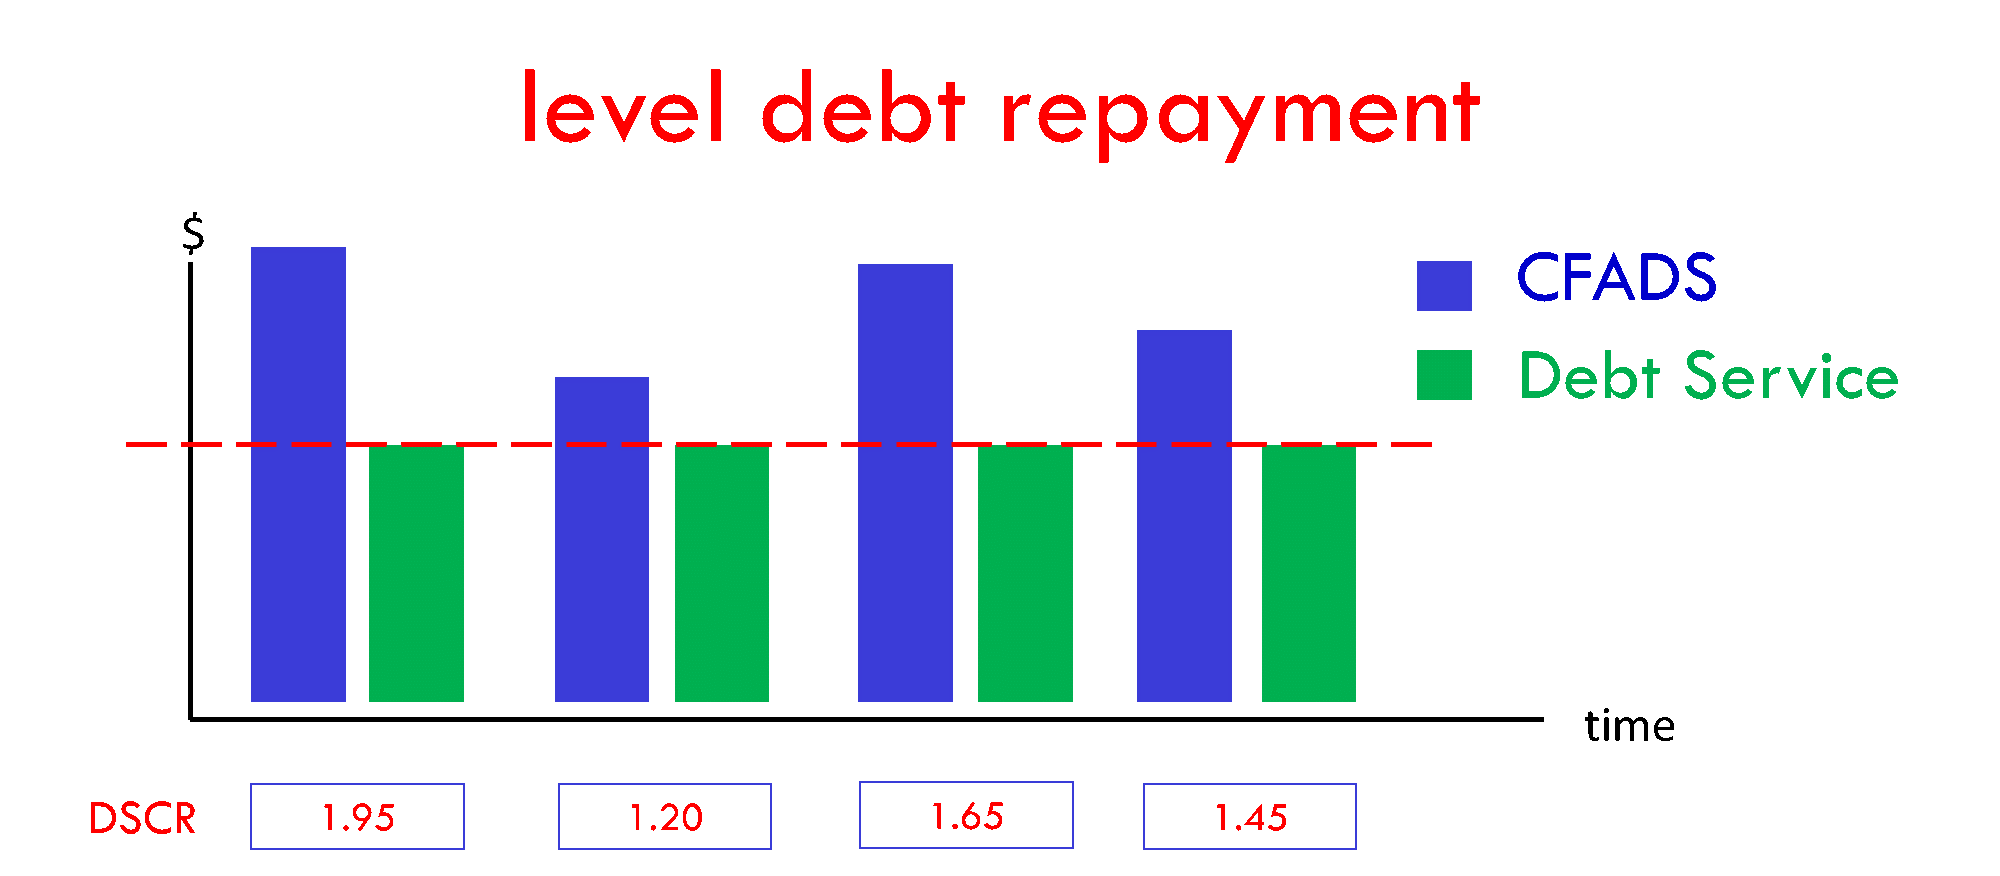 Debt repayment schedule